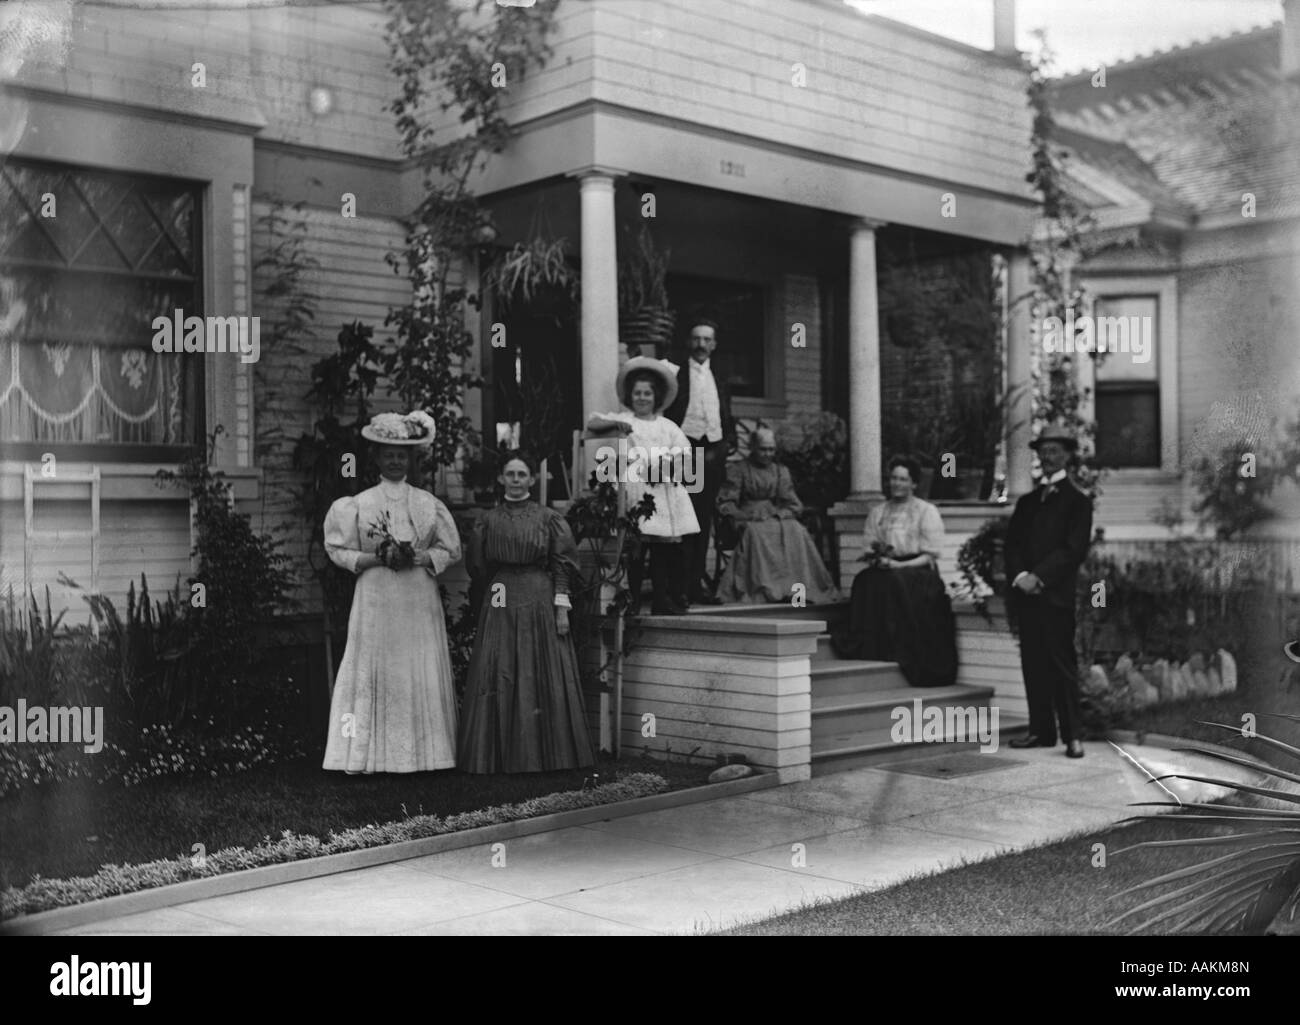 1890ER JAHRE 1900 S FAMILIE POSIERT FÜR FOTOGRAFIEREN AUßERHALB VERANDA DES HAUSES, BLICK IN DIE KAMERA Stockfoto